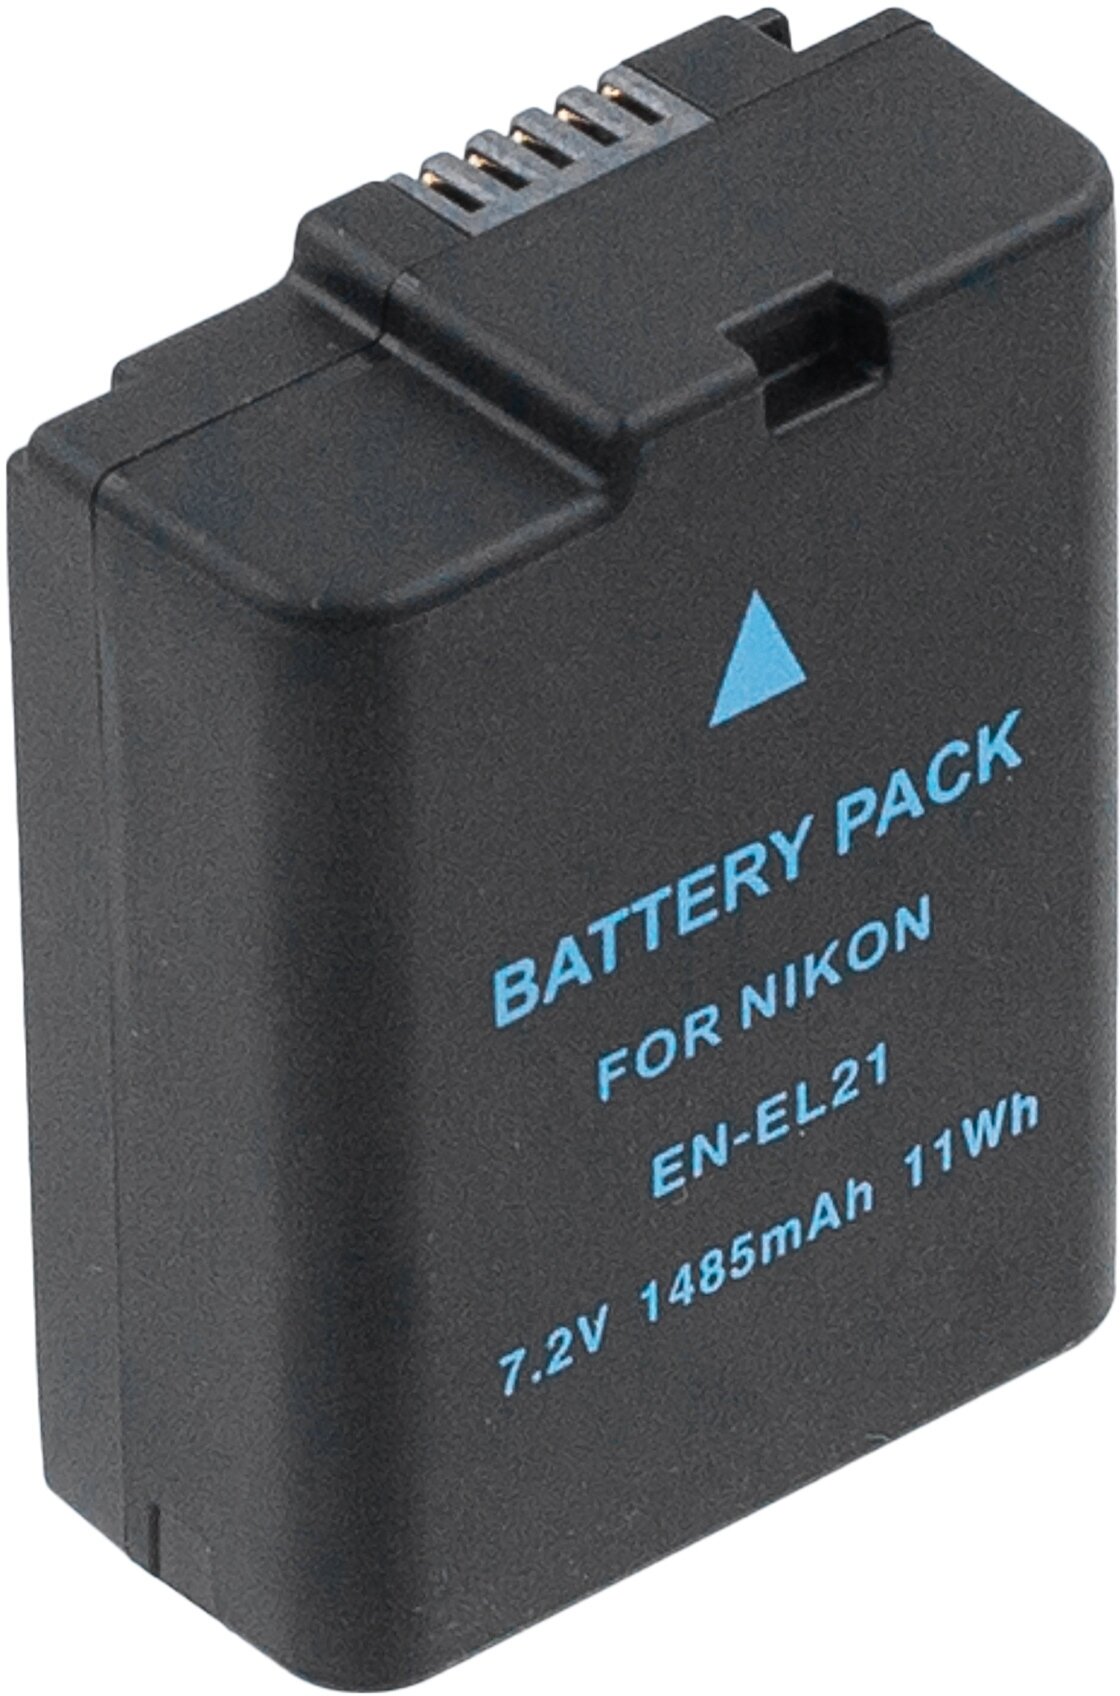 Аккумулятор EN-EL21 для Nikon 1 V2 - 1485mah